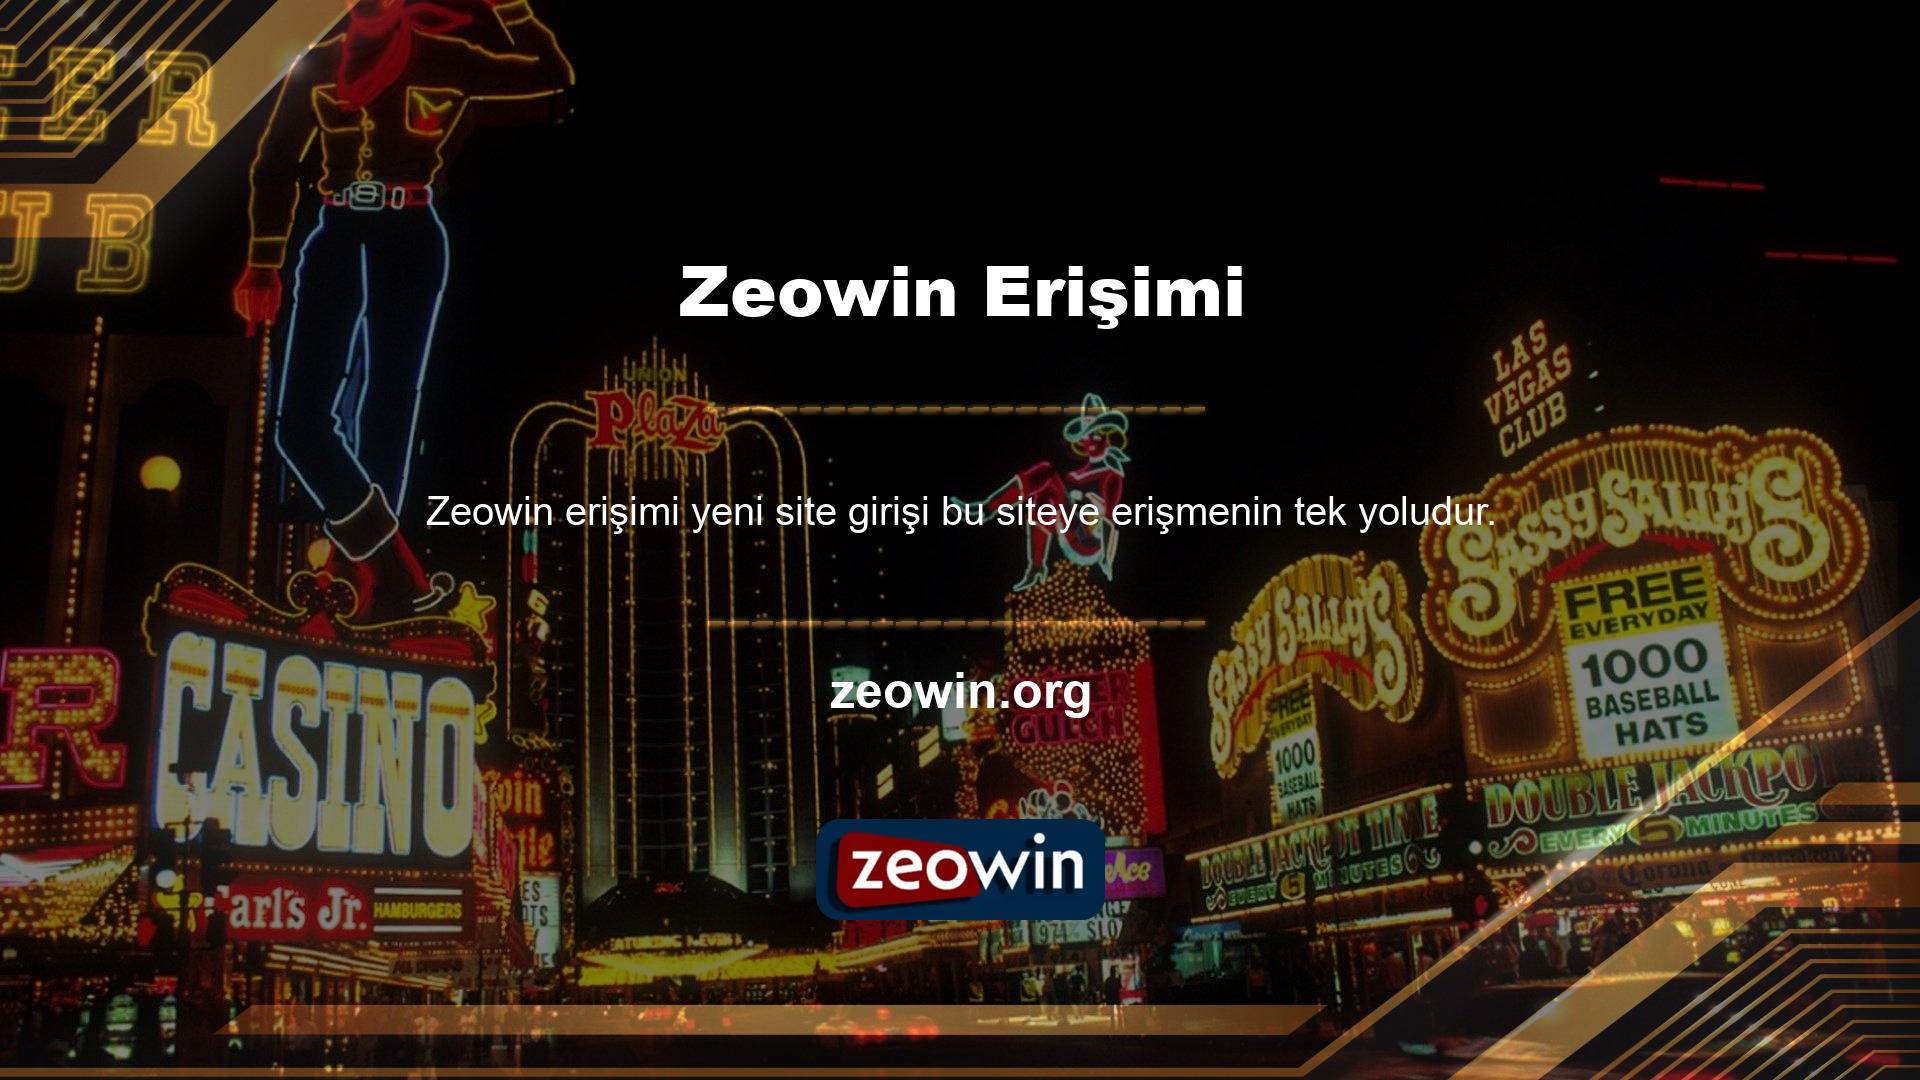 Müşterinin Zeowin bakış açısı ve güvenlik kaygıları, durumun ortak bir yönüdür